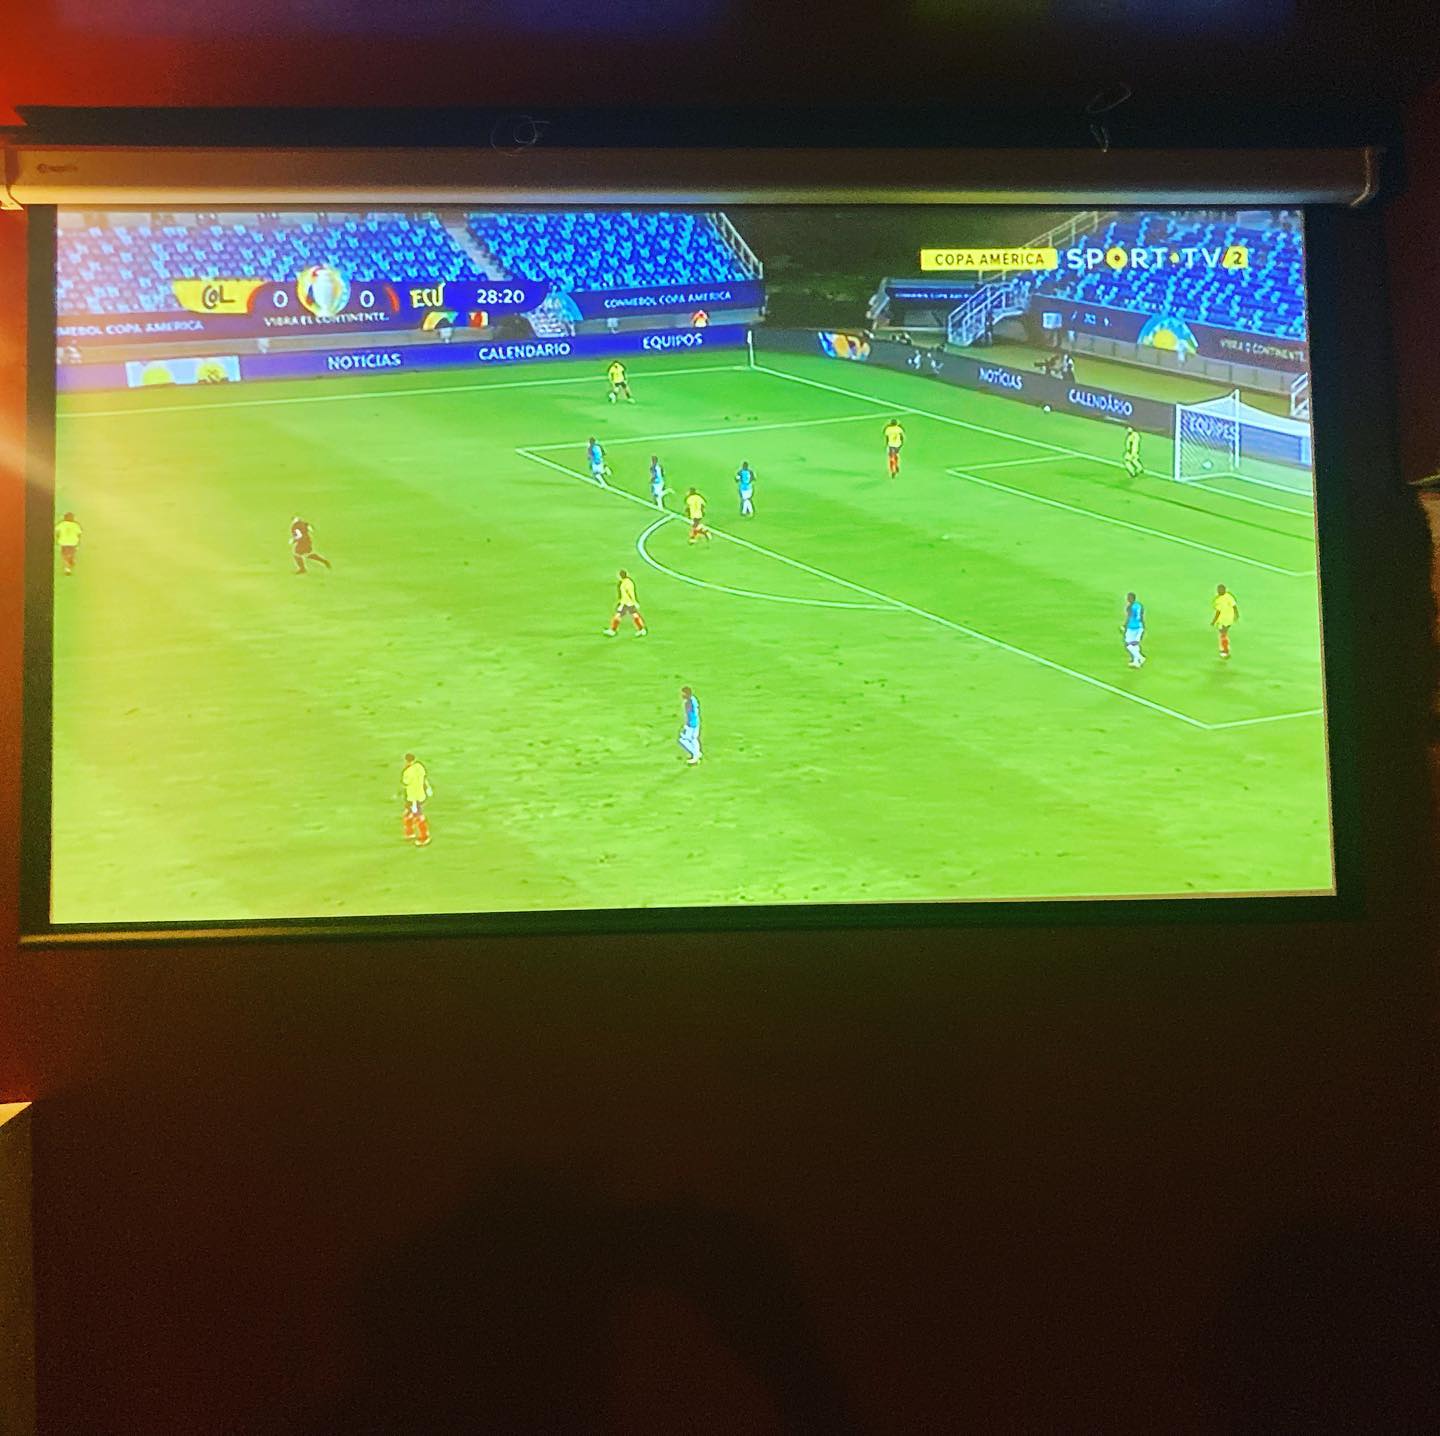 All FOOTBALL Games at Embaixada on BIG Screen